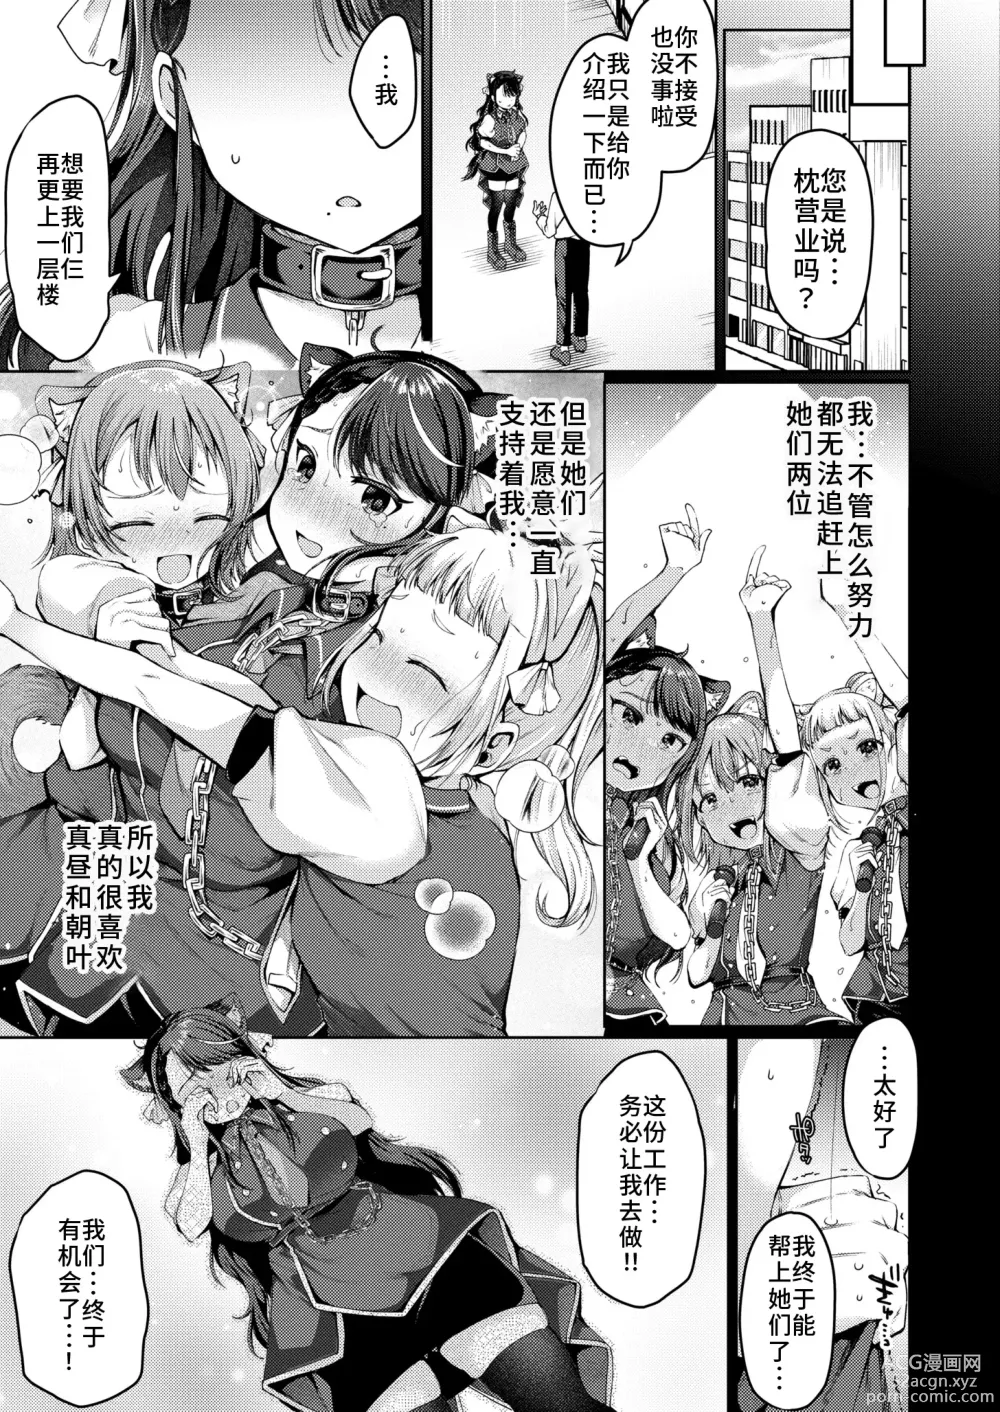 Page 3 of manga Adayume